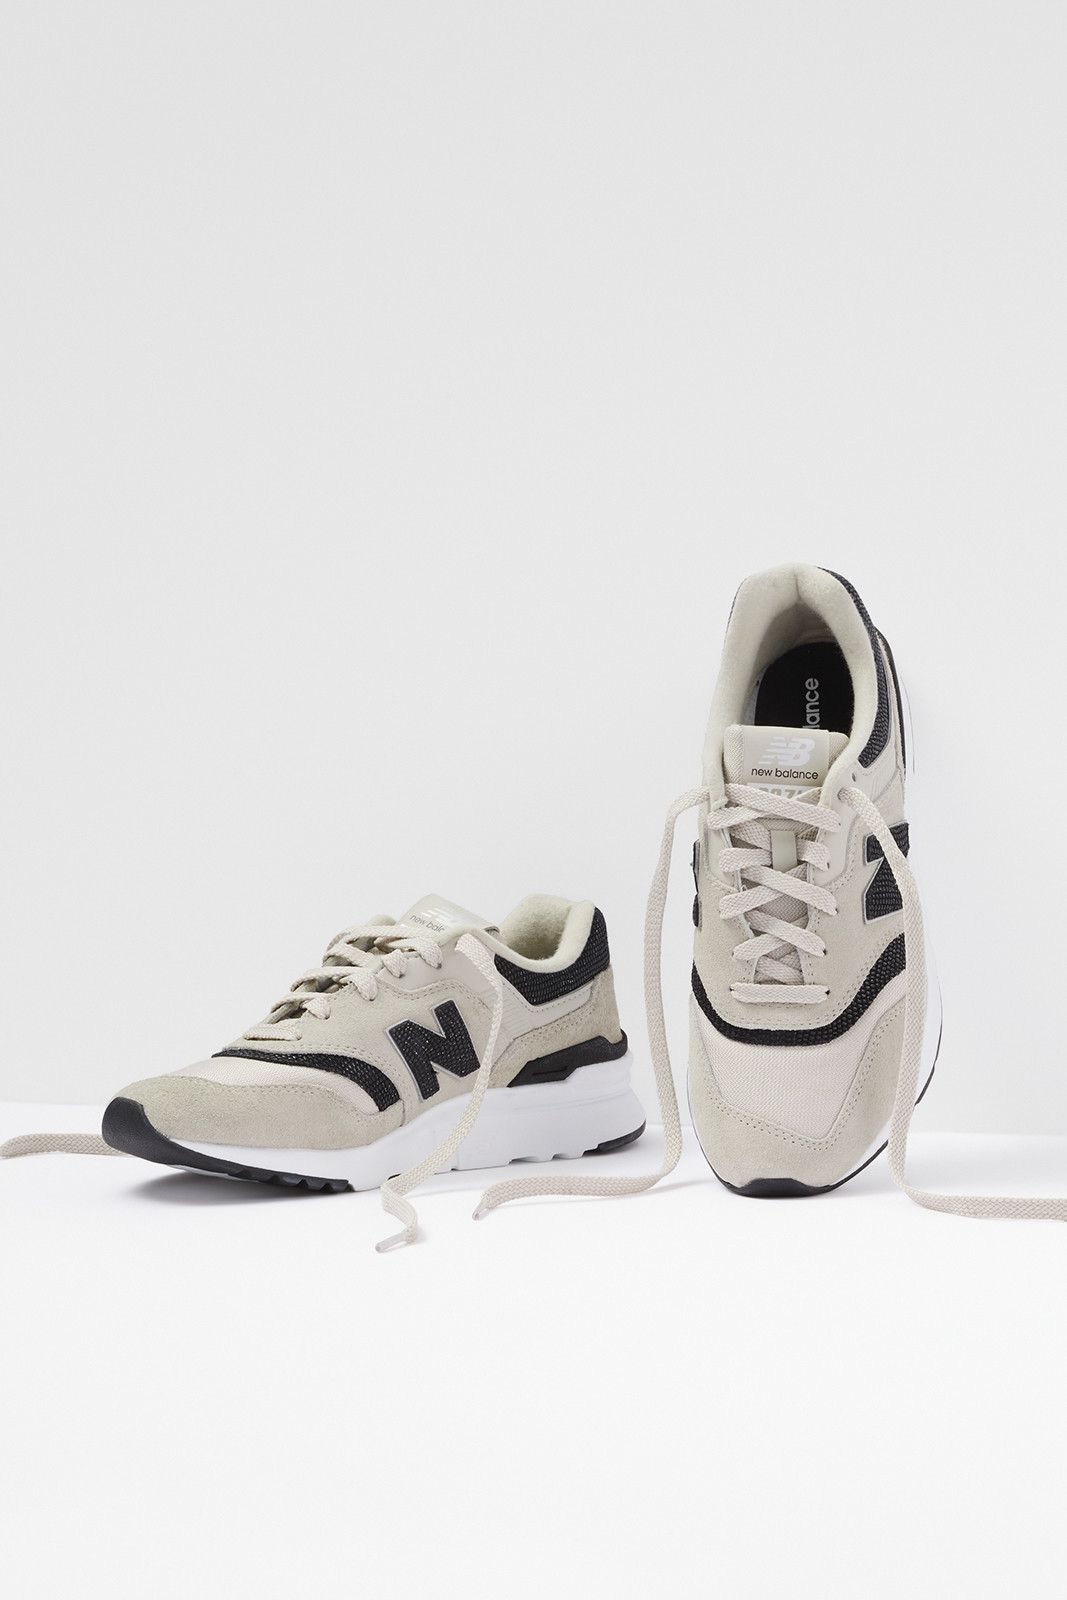 NEW BALANCE 997 Sneaker | EVEREVE | Evereve